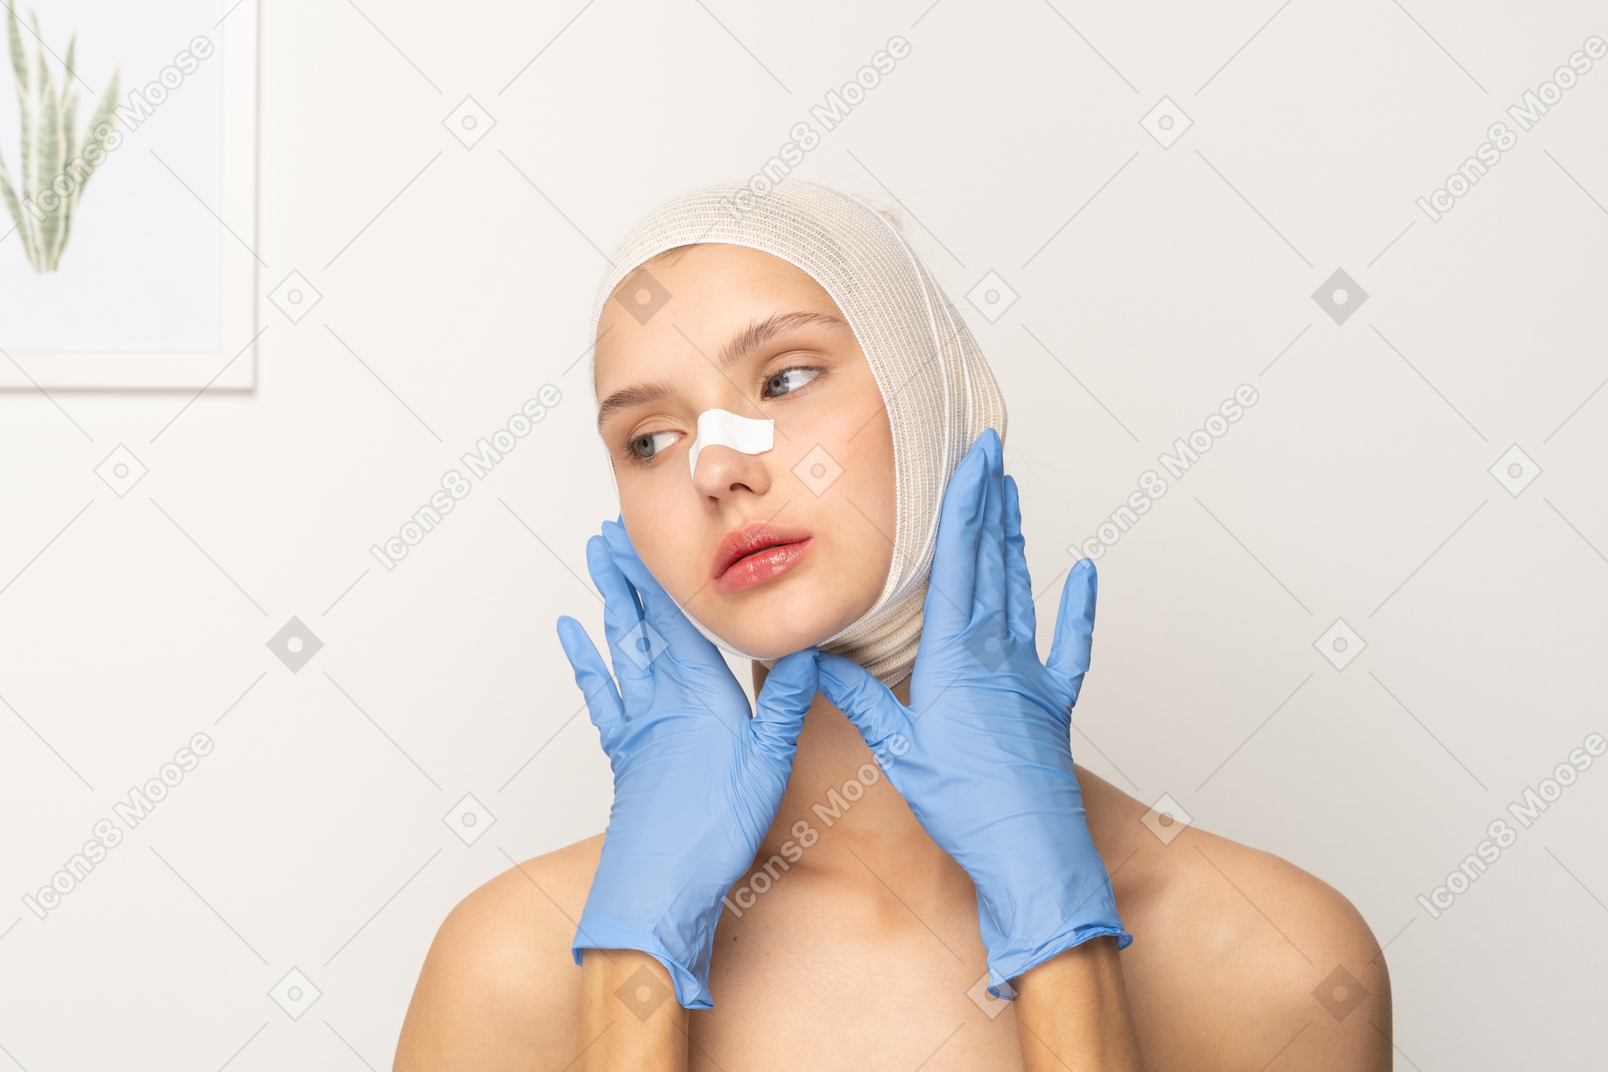 彼女の顔をフレーミングする手袋をはめた手を持つ女性患者